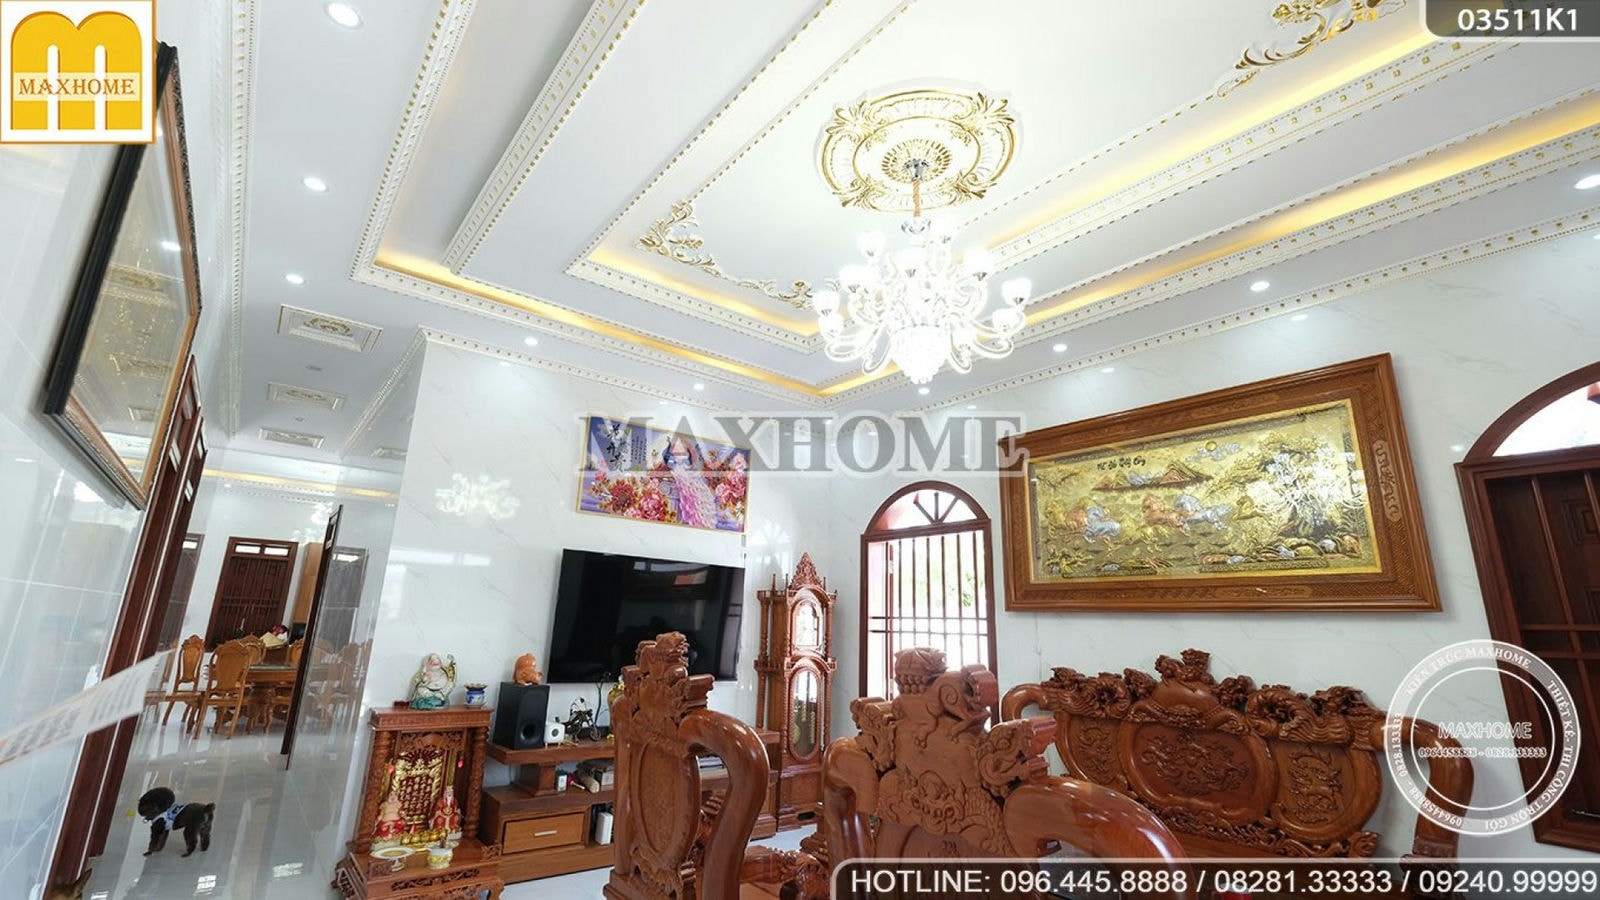 Maxhome xây trọn gói nhà cấp 4 mái Thái siêu đẹp tại Vũng Tàu